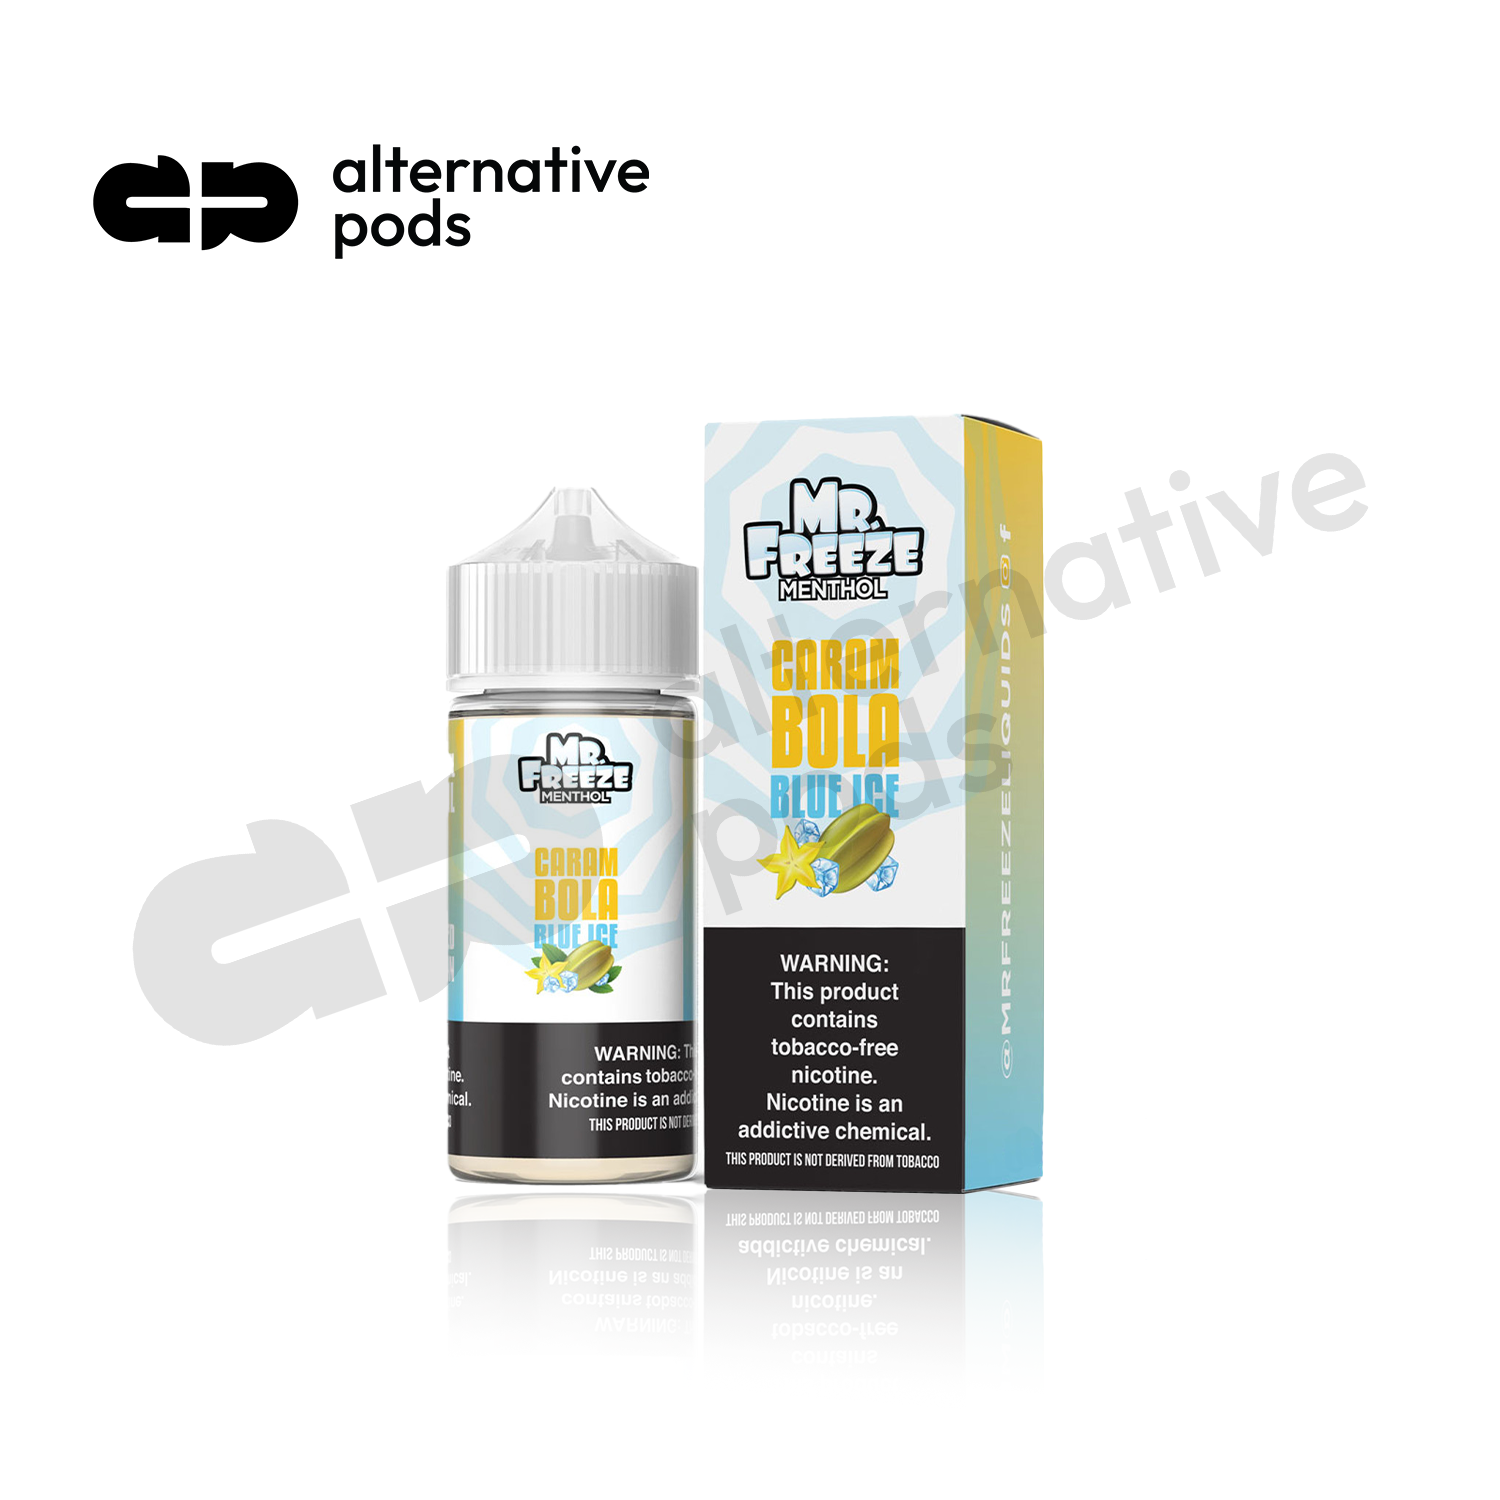 Mr. Freeze Menthol Synthetic Nicotine E-Liquid 100ML - Online Vape Shop | Alternative pods | Affordable Vapor Store | Vape Disposables